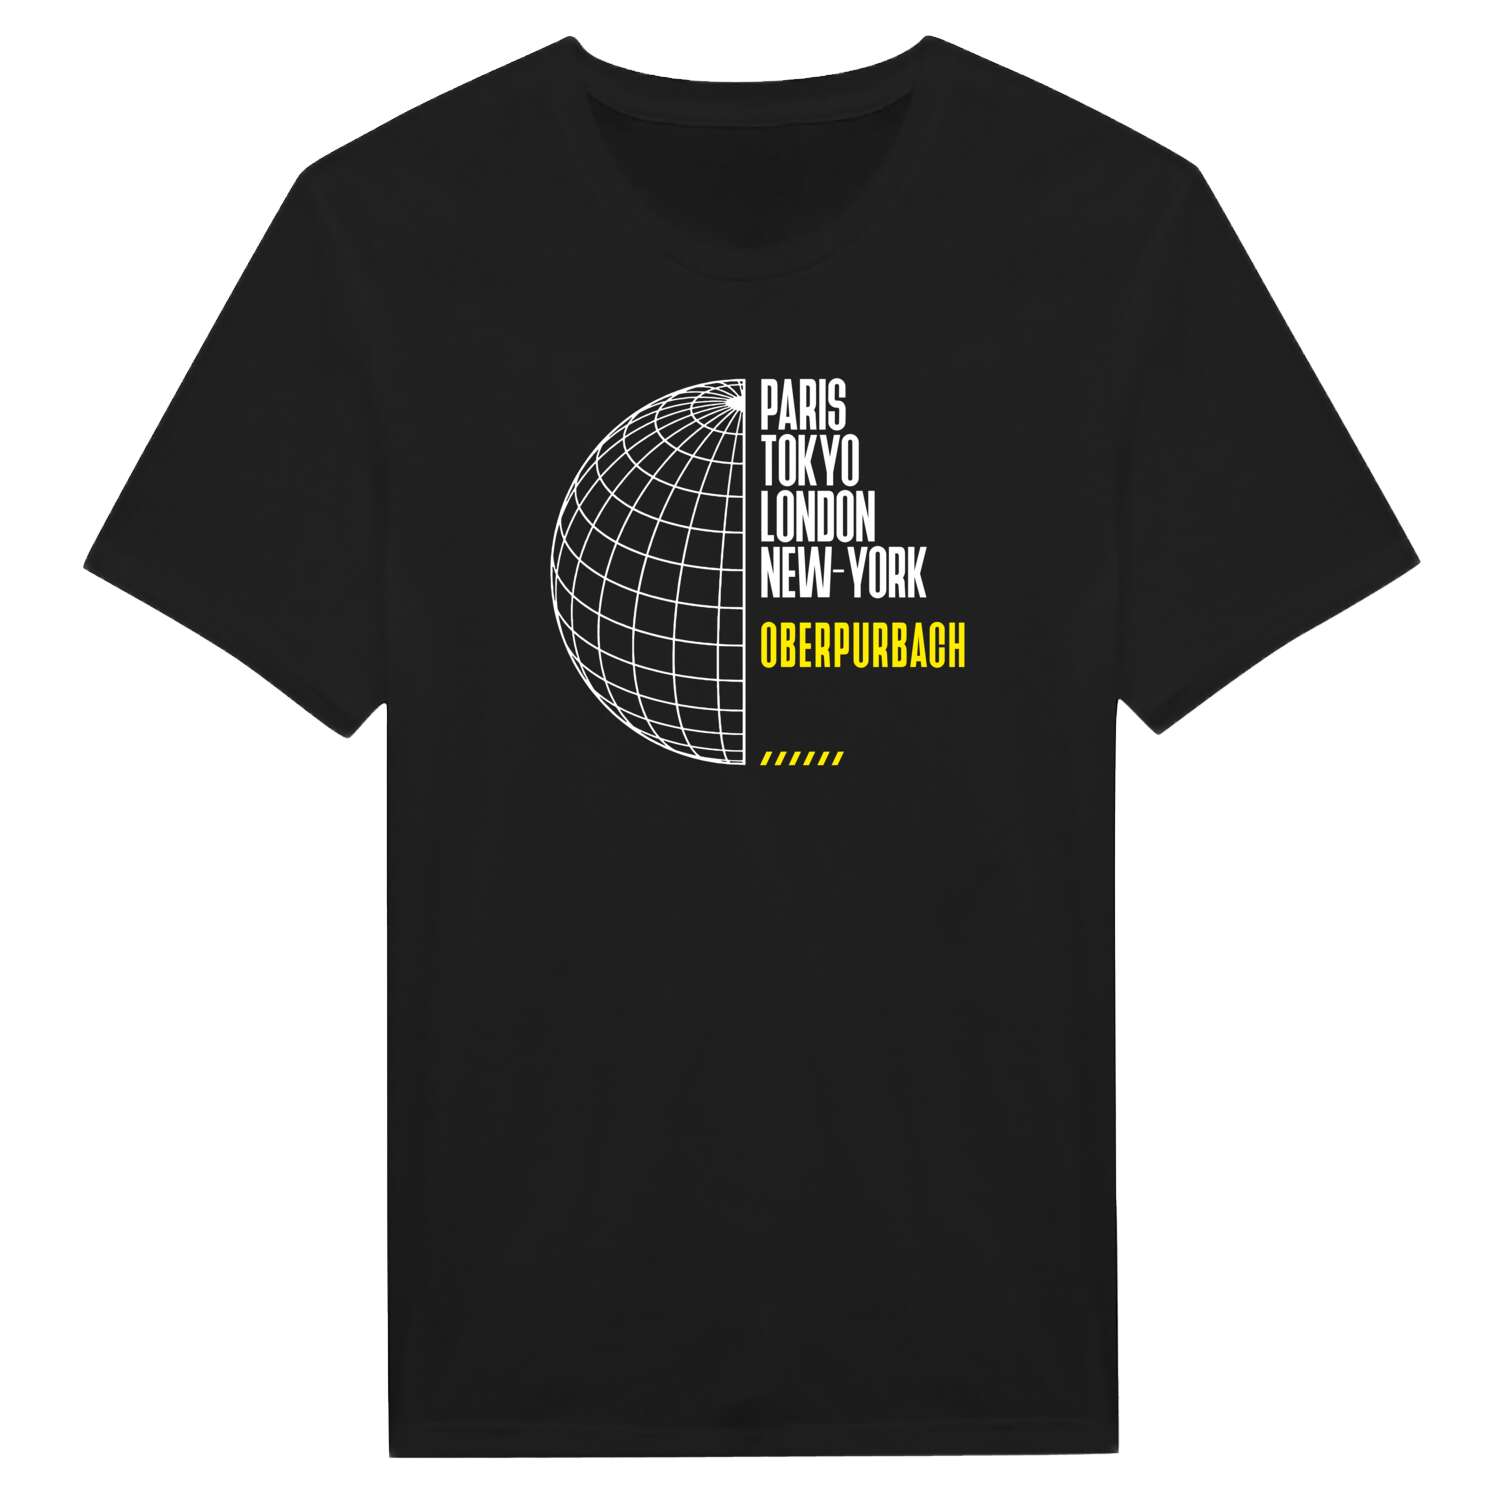 Oberpurbach T-Shirt »Paris Tokyo London«